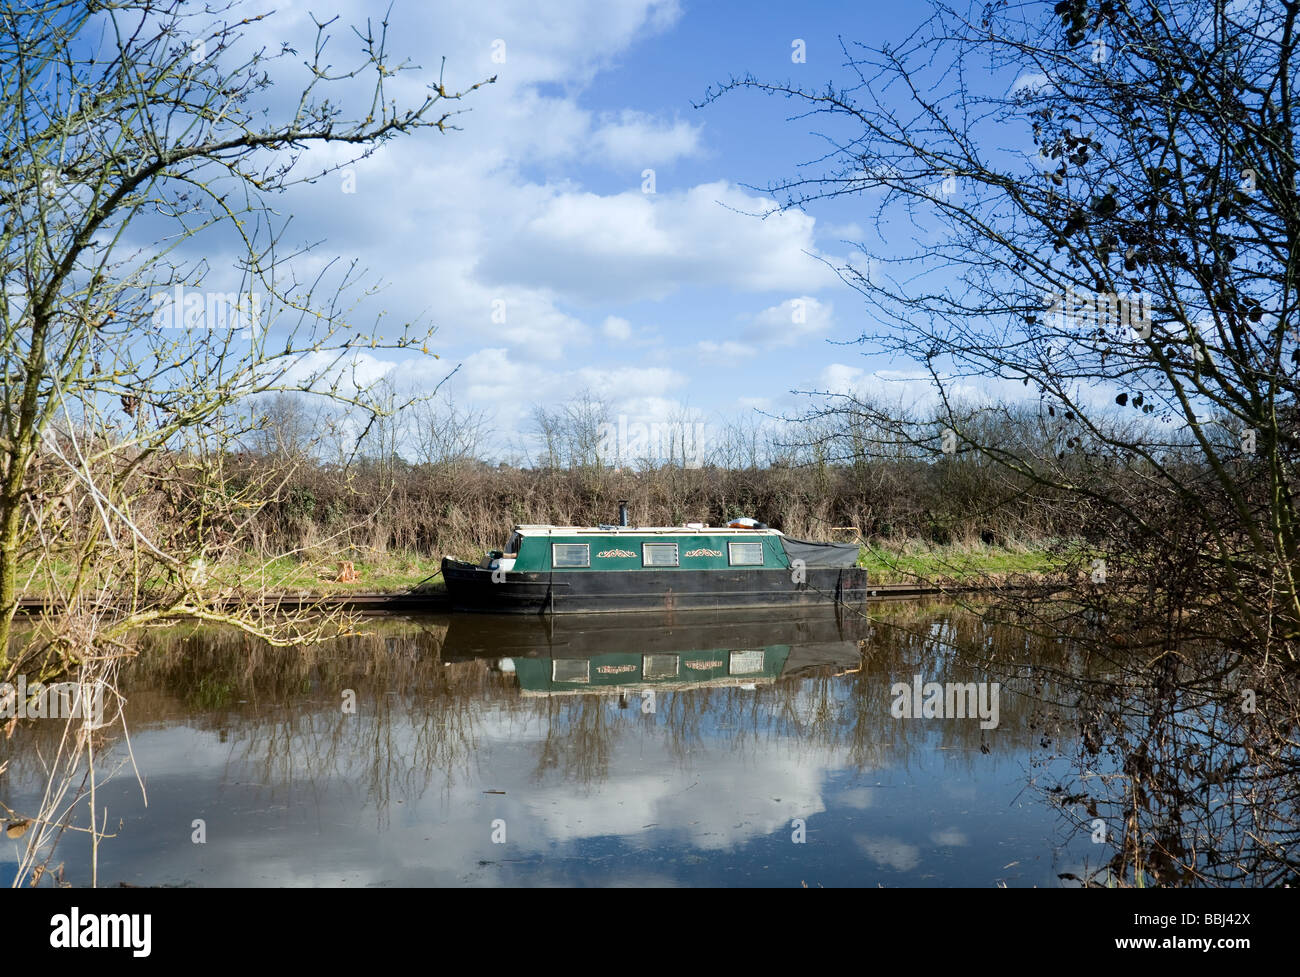 UK, England, Buckinghamshire, near Denham, Grand Union Canal and moored Narrowboat named 'Wendy Kathy' Stock Photo